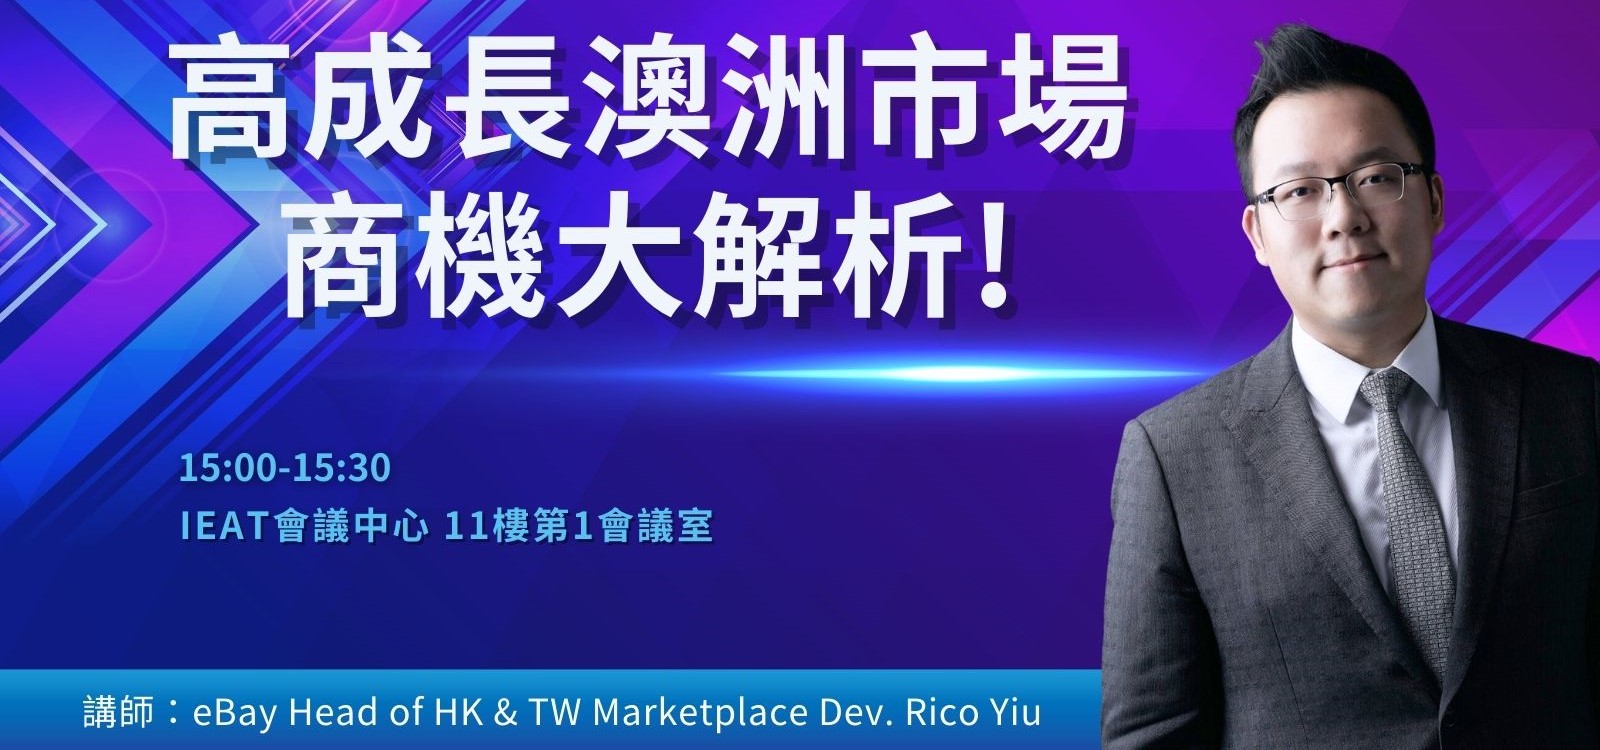 場次 3 ：15:00-15:30 澳洲市場新領域，高流量高成長！eBay香港與台灣市場拓銷總監不藏私分享多年經驗